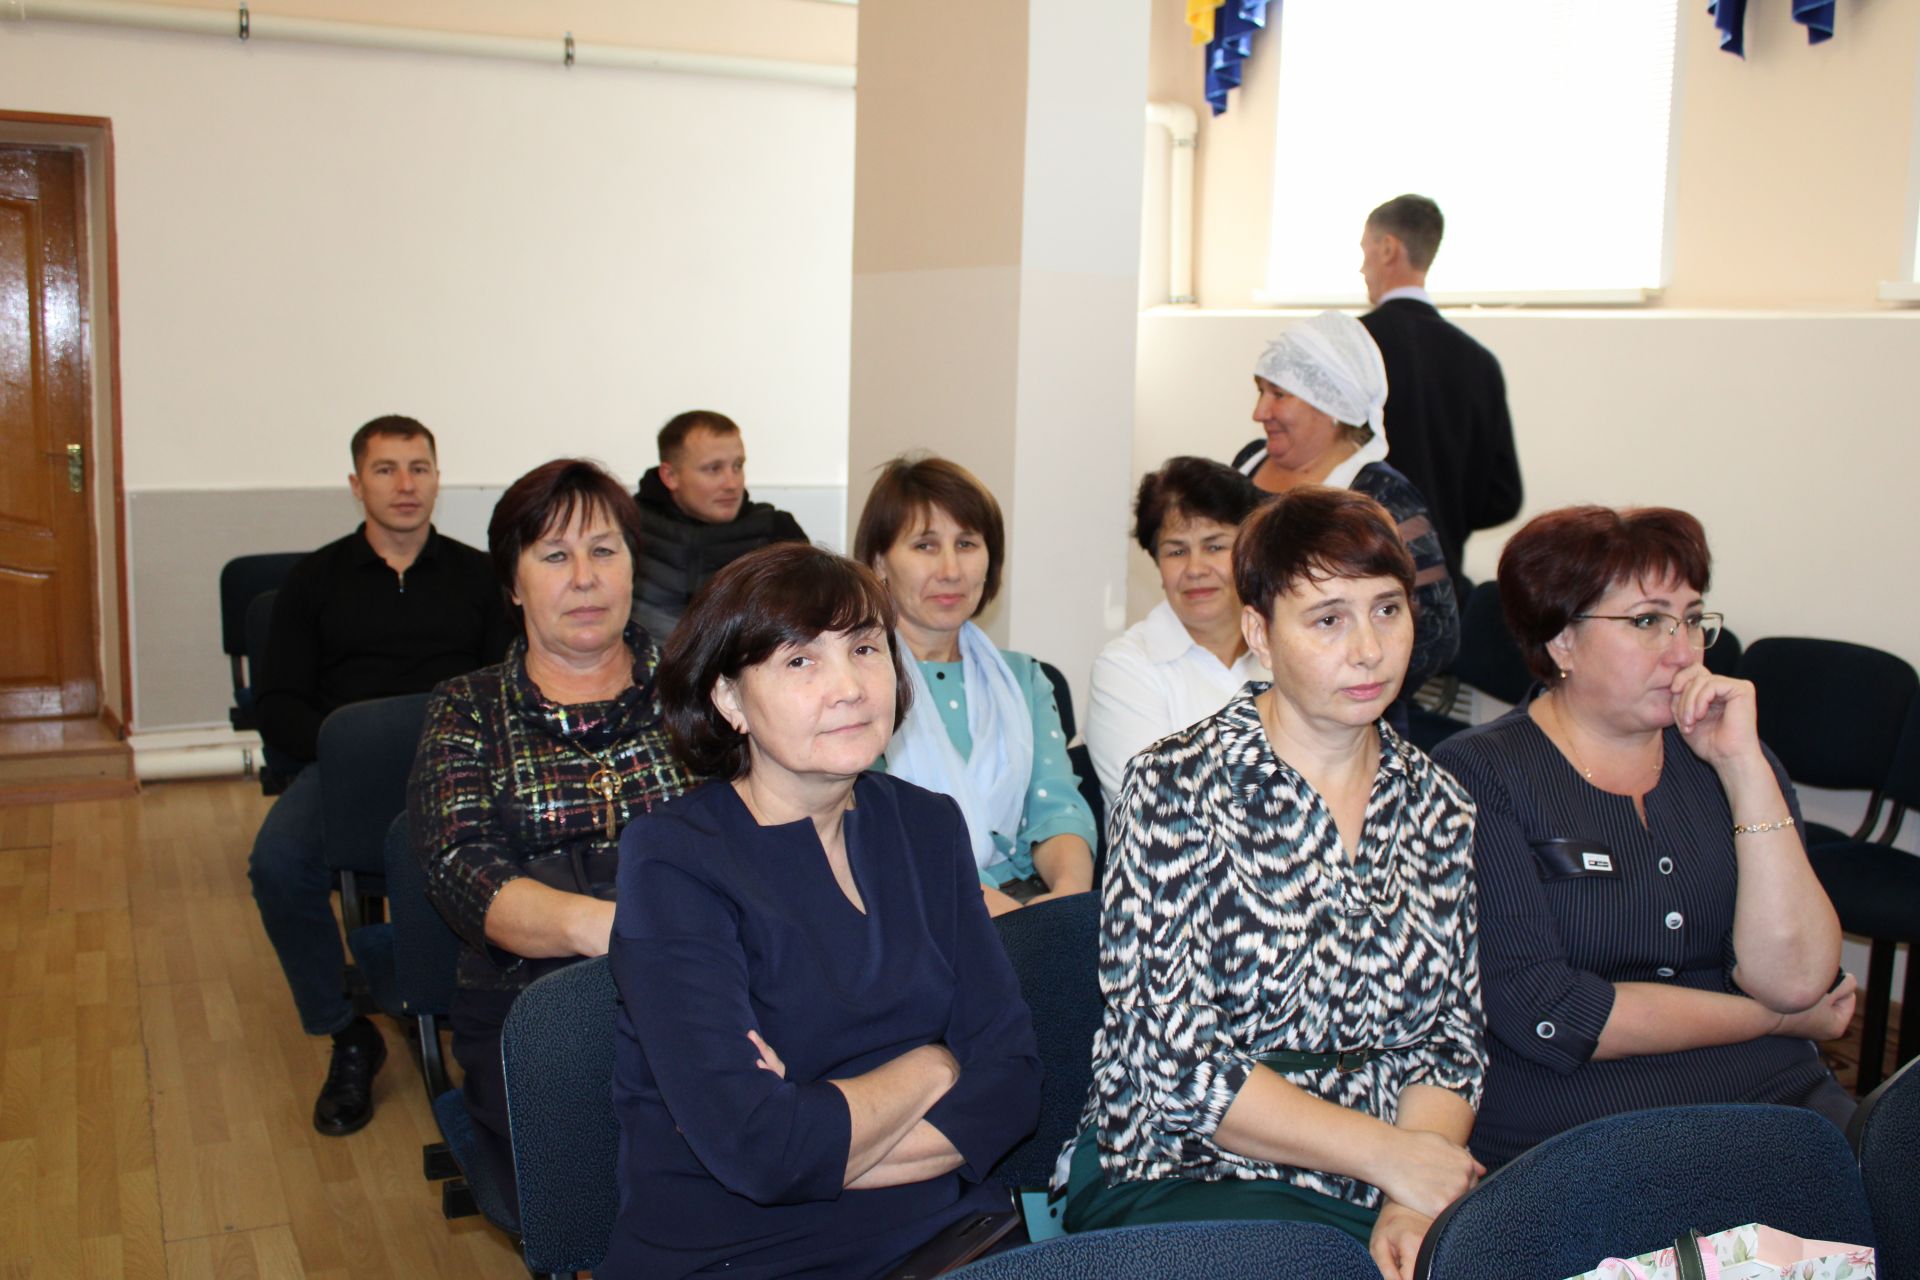 В День учителя, 5 октября, в Новошешминской гимназии прошло праздничное мероприятие